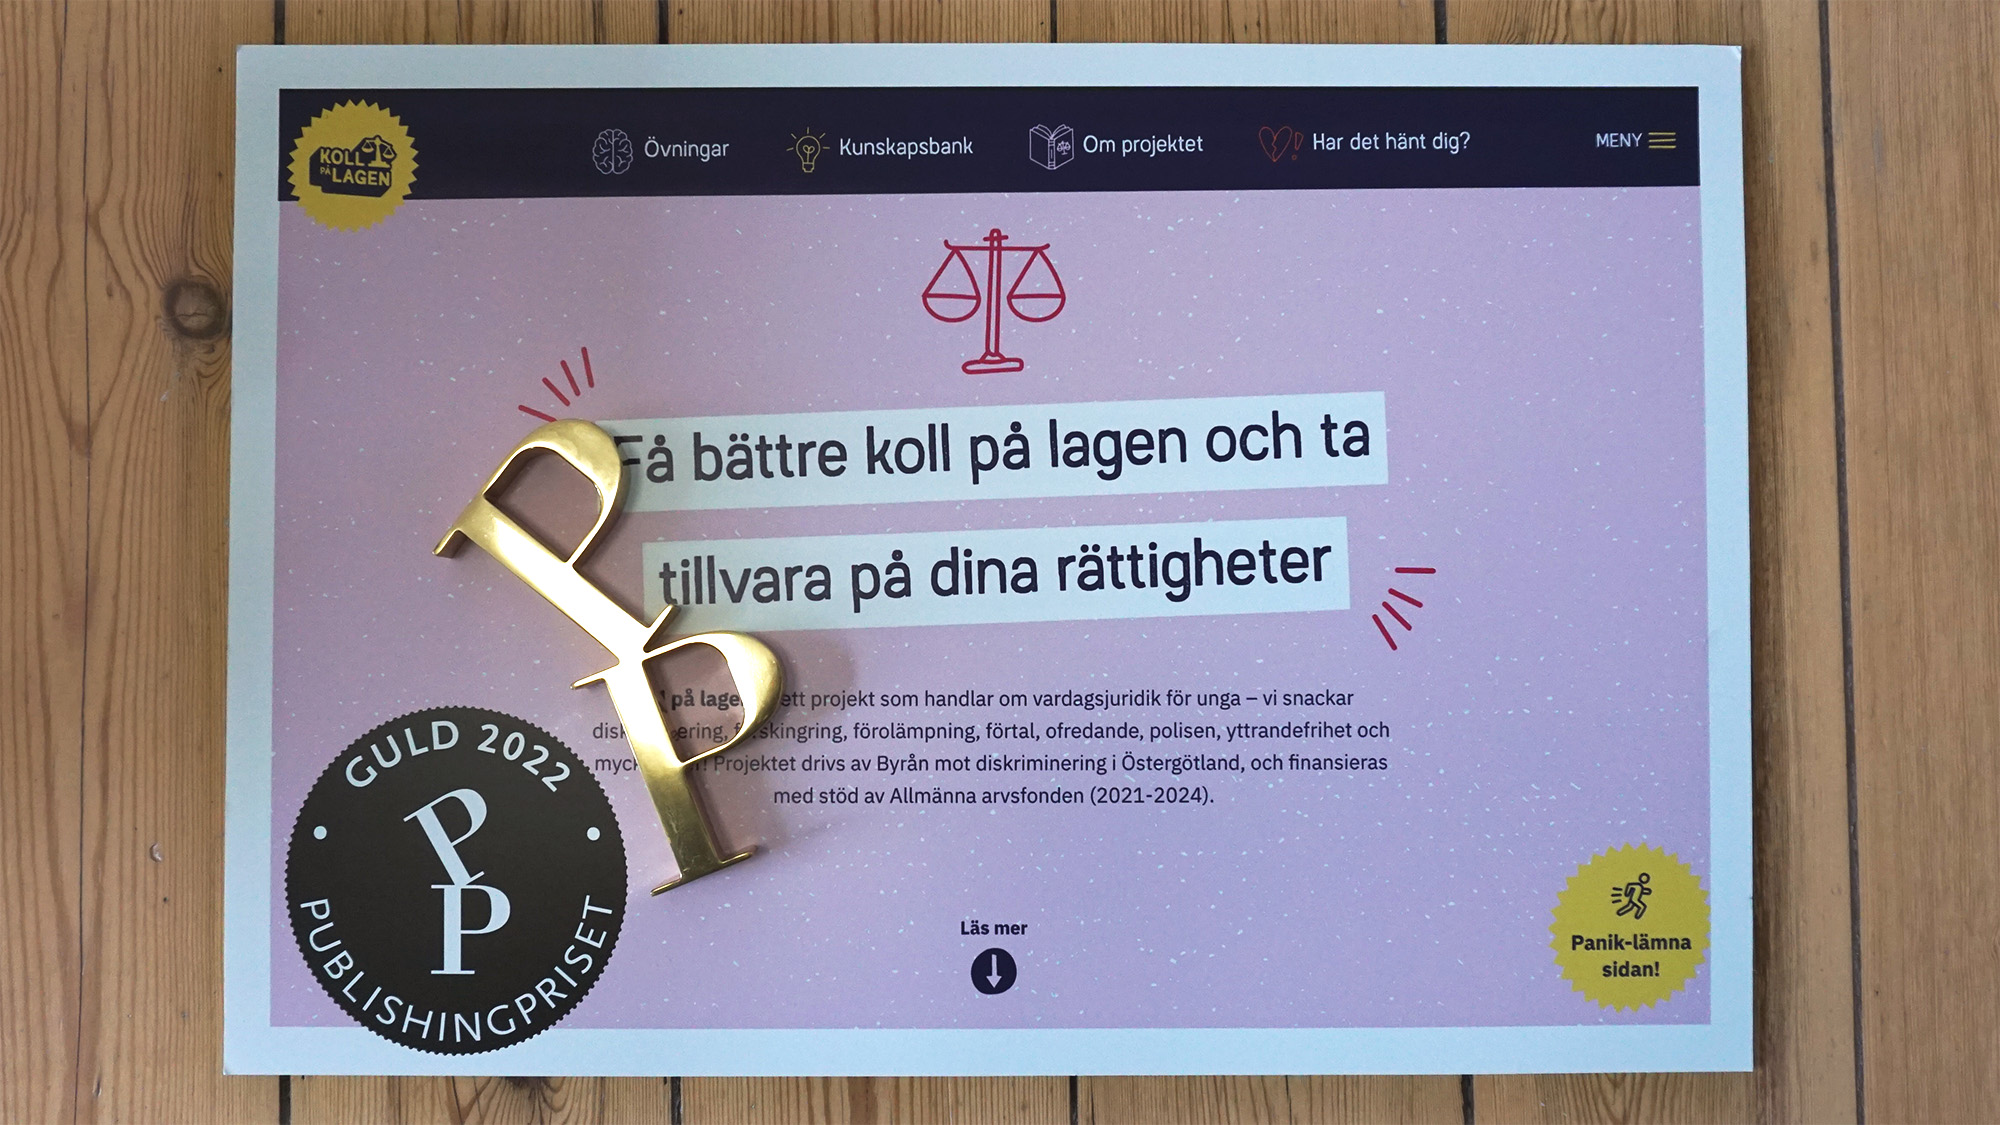 Publishingpriset 2022 guldstatyett på affisch som informerar om att Hamrén vinner guld med Koll på lagen